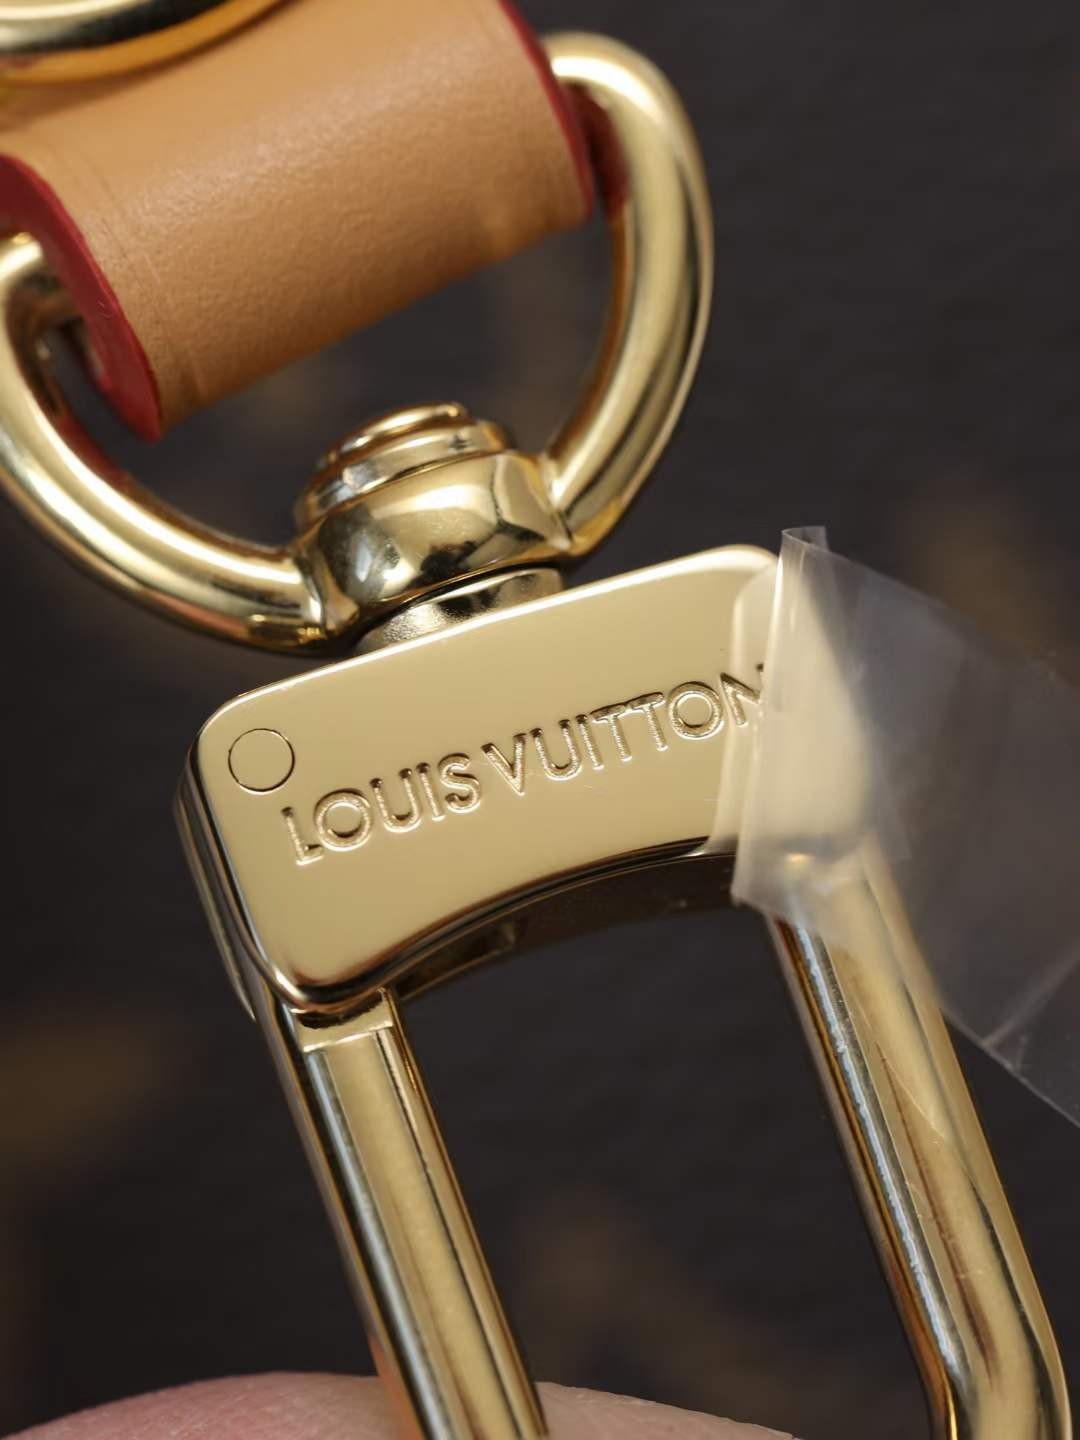 Louis Vuitton M45832 Túi bản sao chất lượng hàng đầu Boulogne （được cập nhật năm 2022） - Chất lượng tốt nhất Túi Louis Vuitton giả trên Cửa hàng trực tuyến, Túi thiết kế bản sao ru